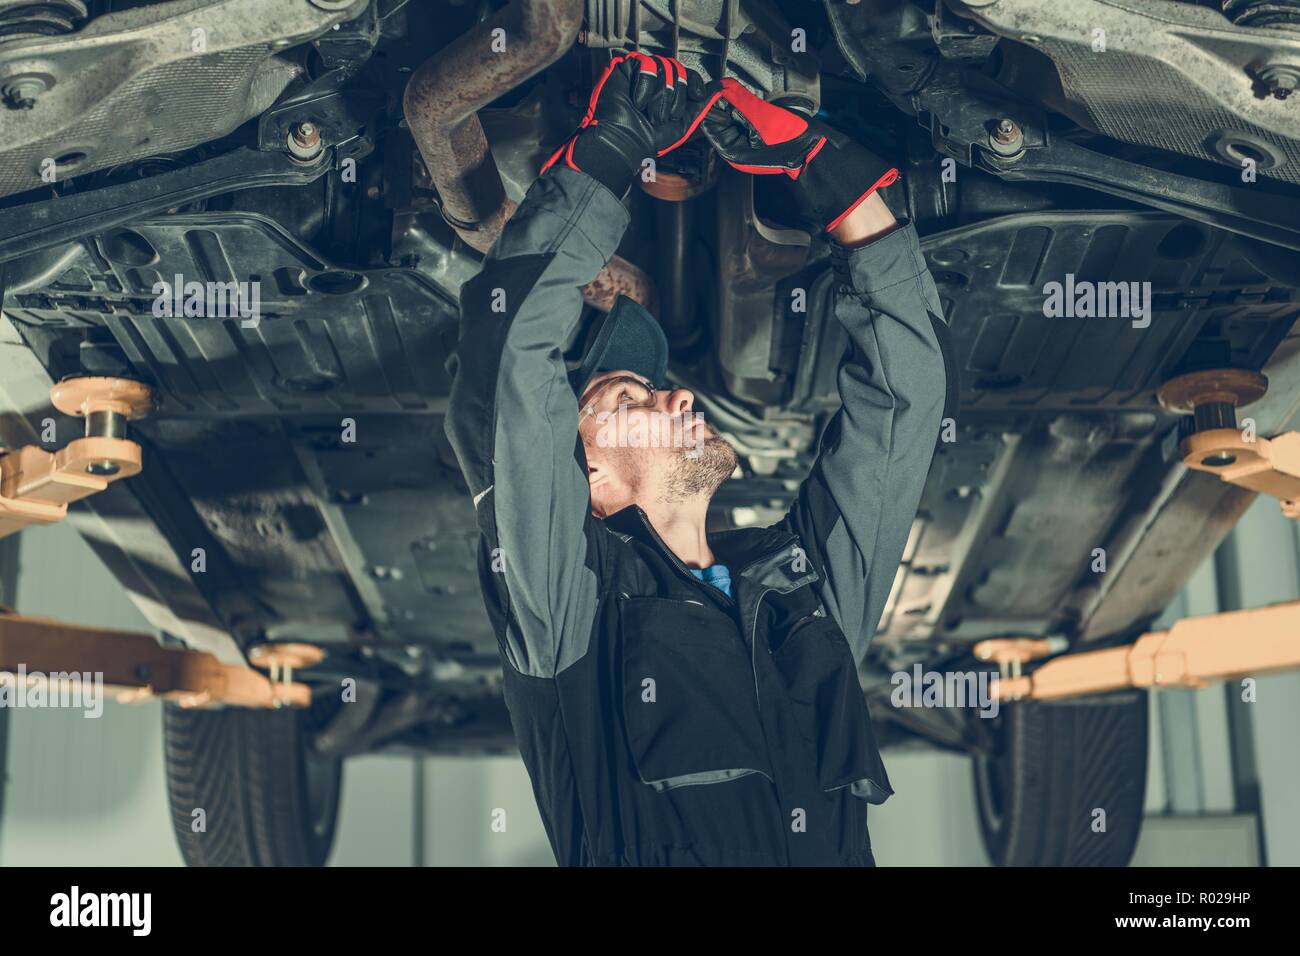 Automechaniker Laufwerkswartung. Kaukasische Arbeiter Einstellen der Spannung an einem Fahrzeug Drivetrain Elemente. Stockfoto